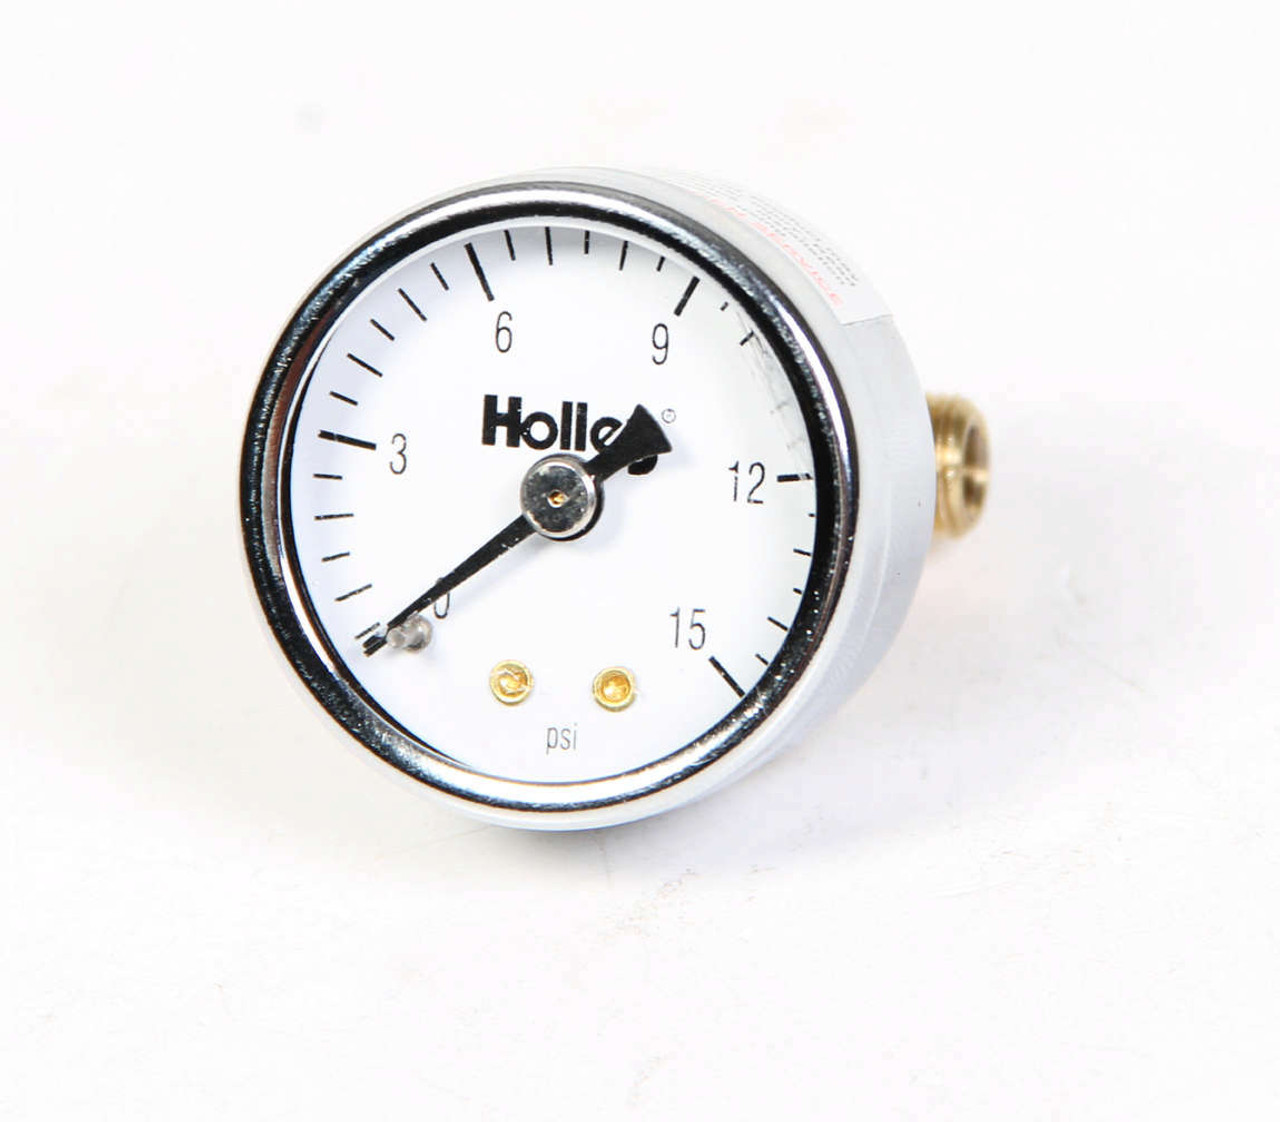 Holley 0-15 Fuel Pressure Gauge